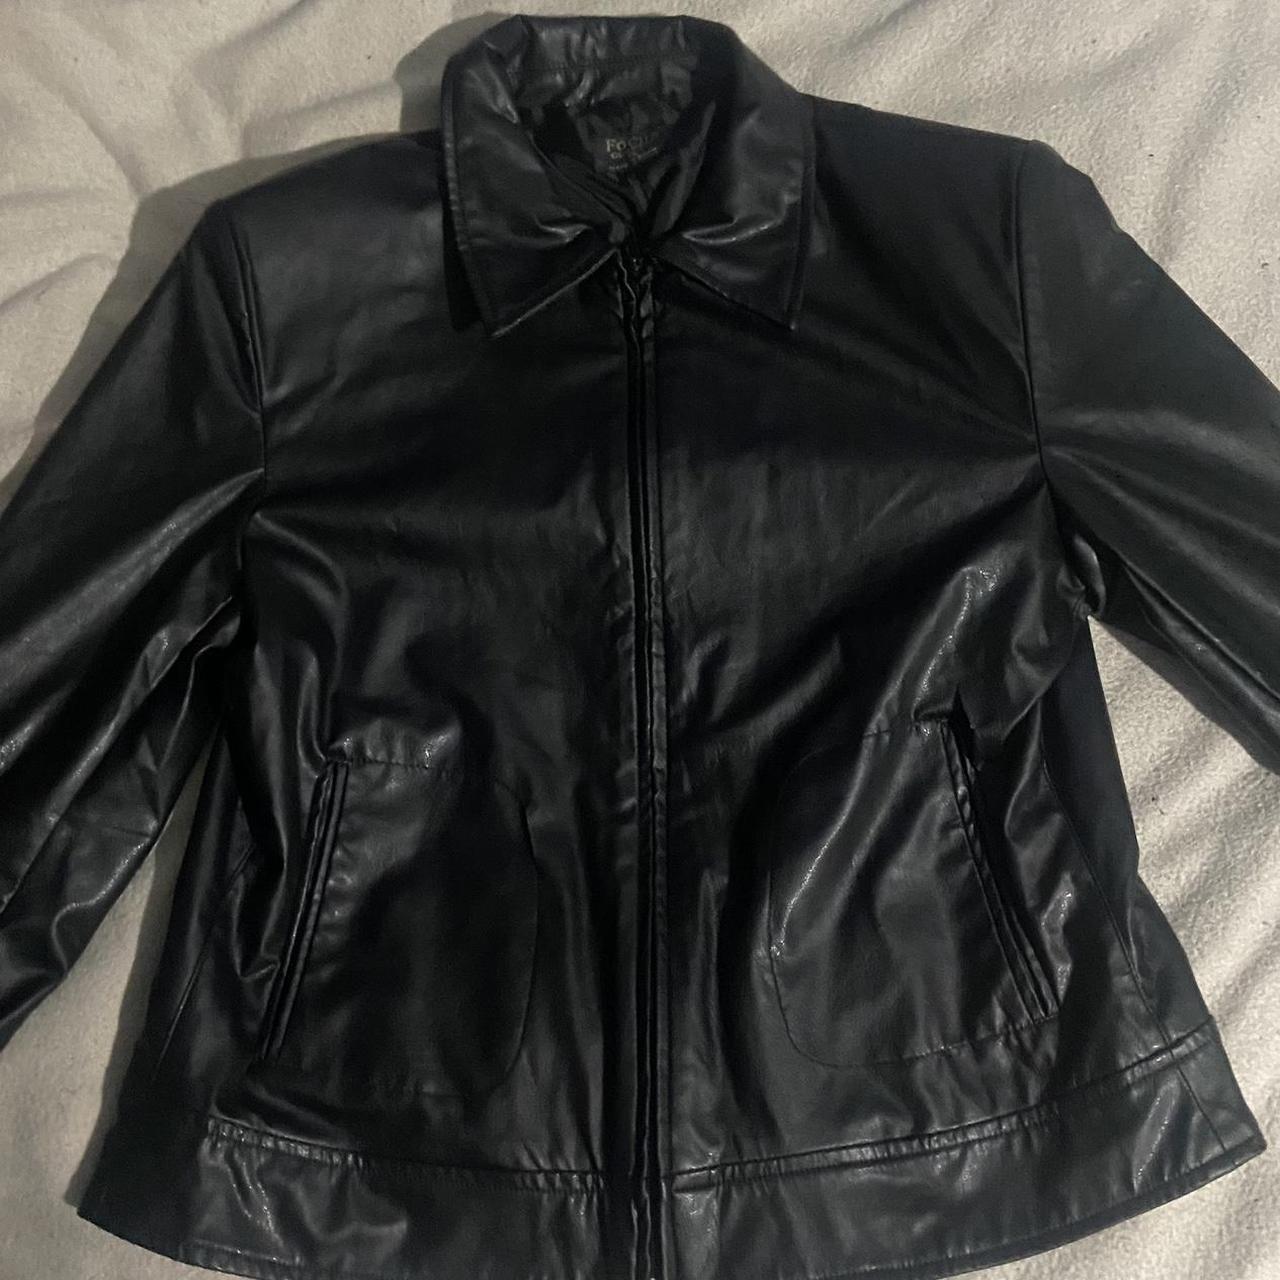 Vintage faux women’s leather jacket Size XL Let me... - Depop